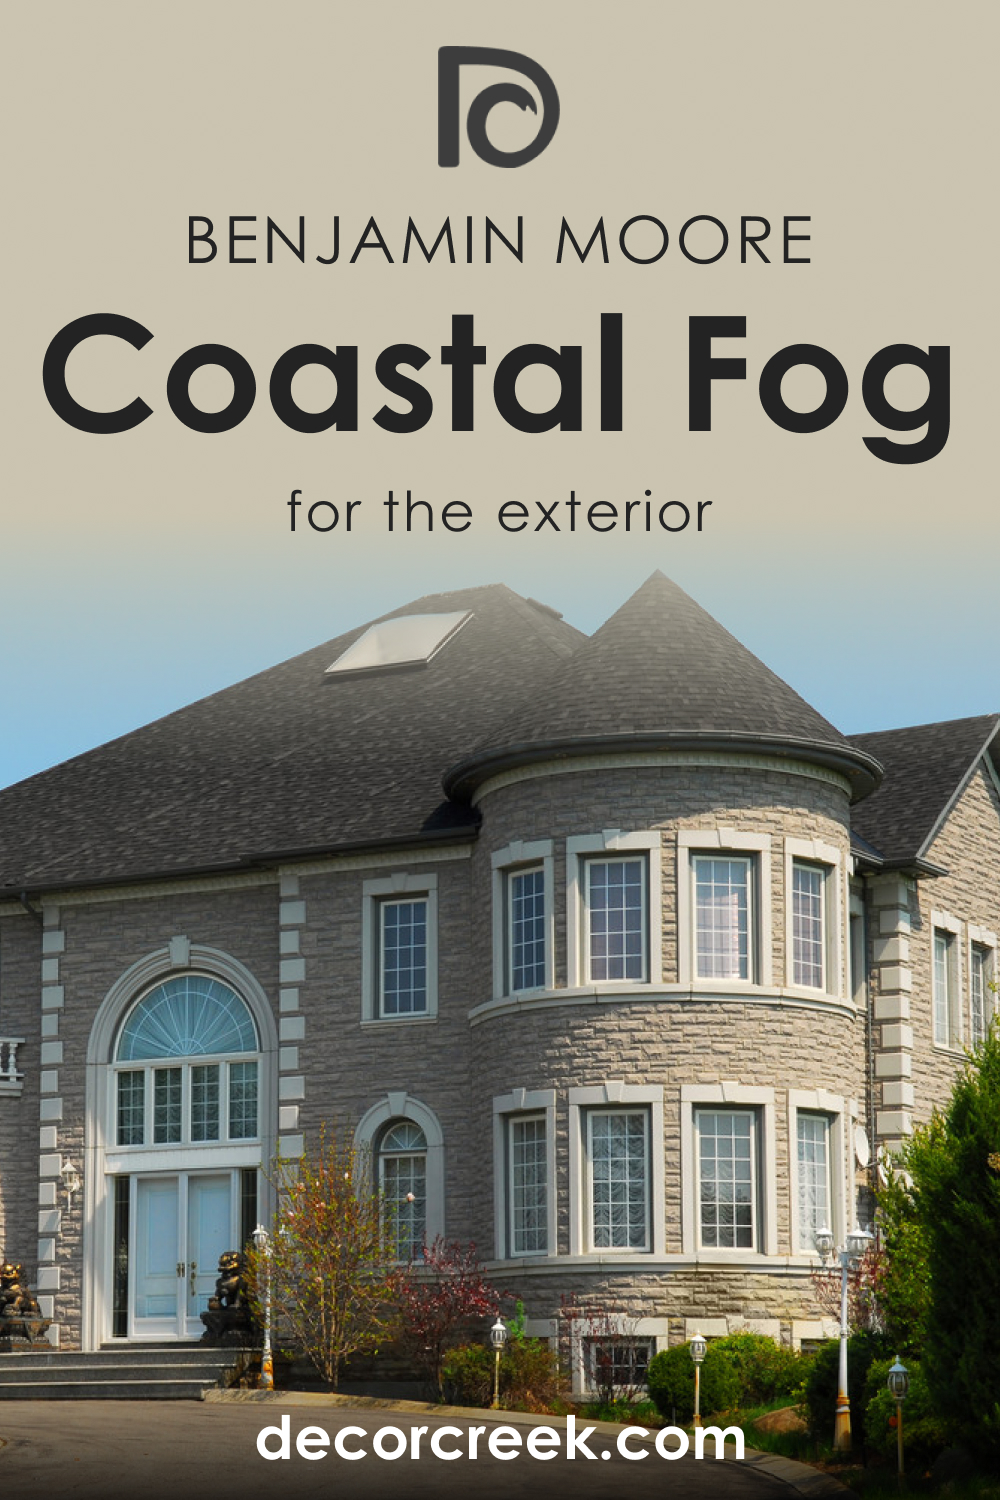 How to Use Coastal Fog AC-1 for an Exterior?